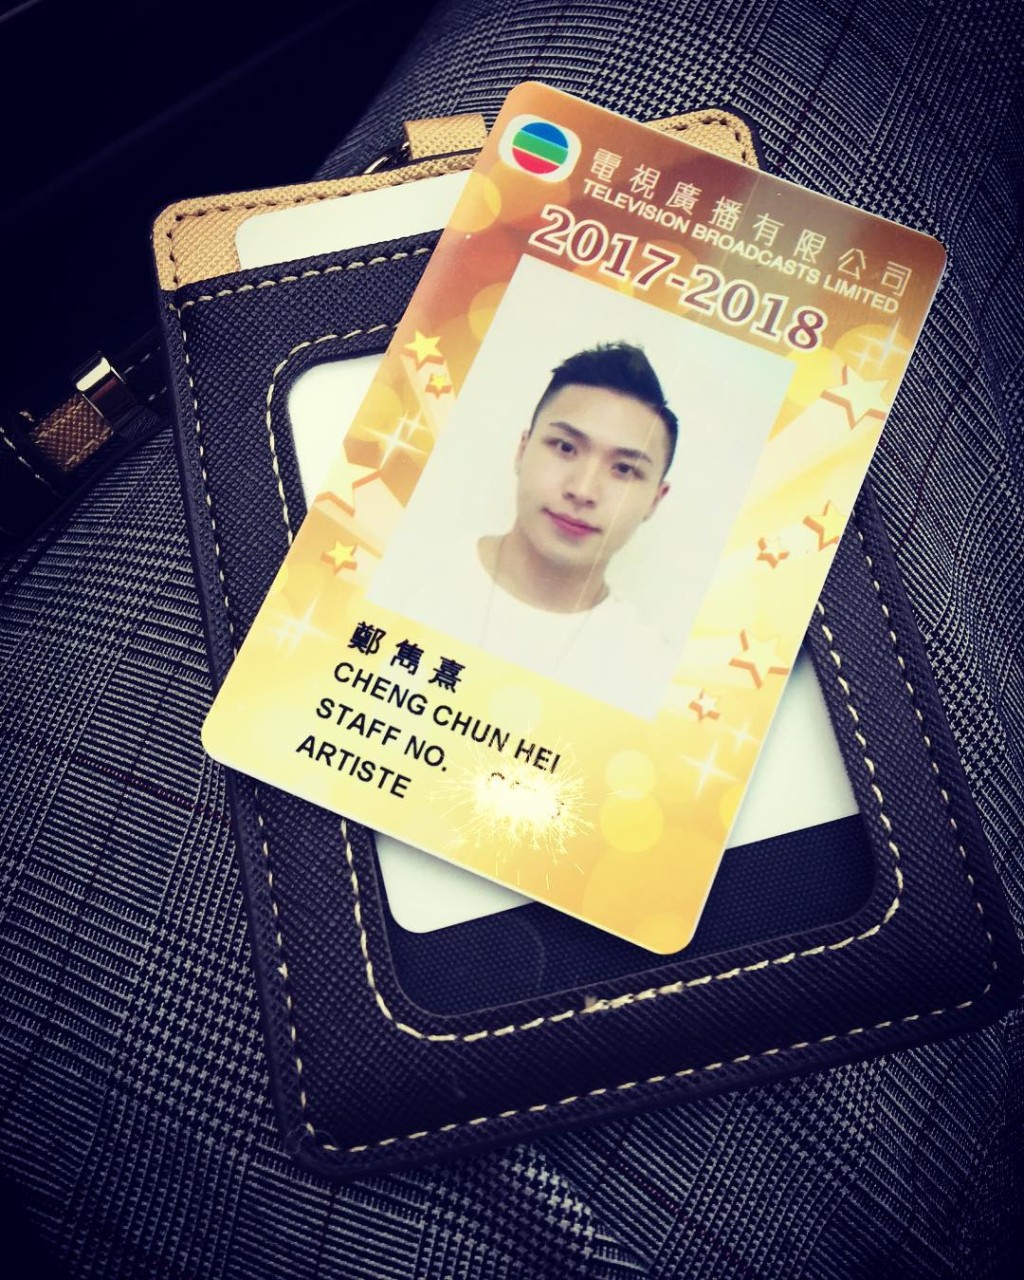 鄭雋熹於2017年報讀TVB藝員訓練班入行。